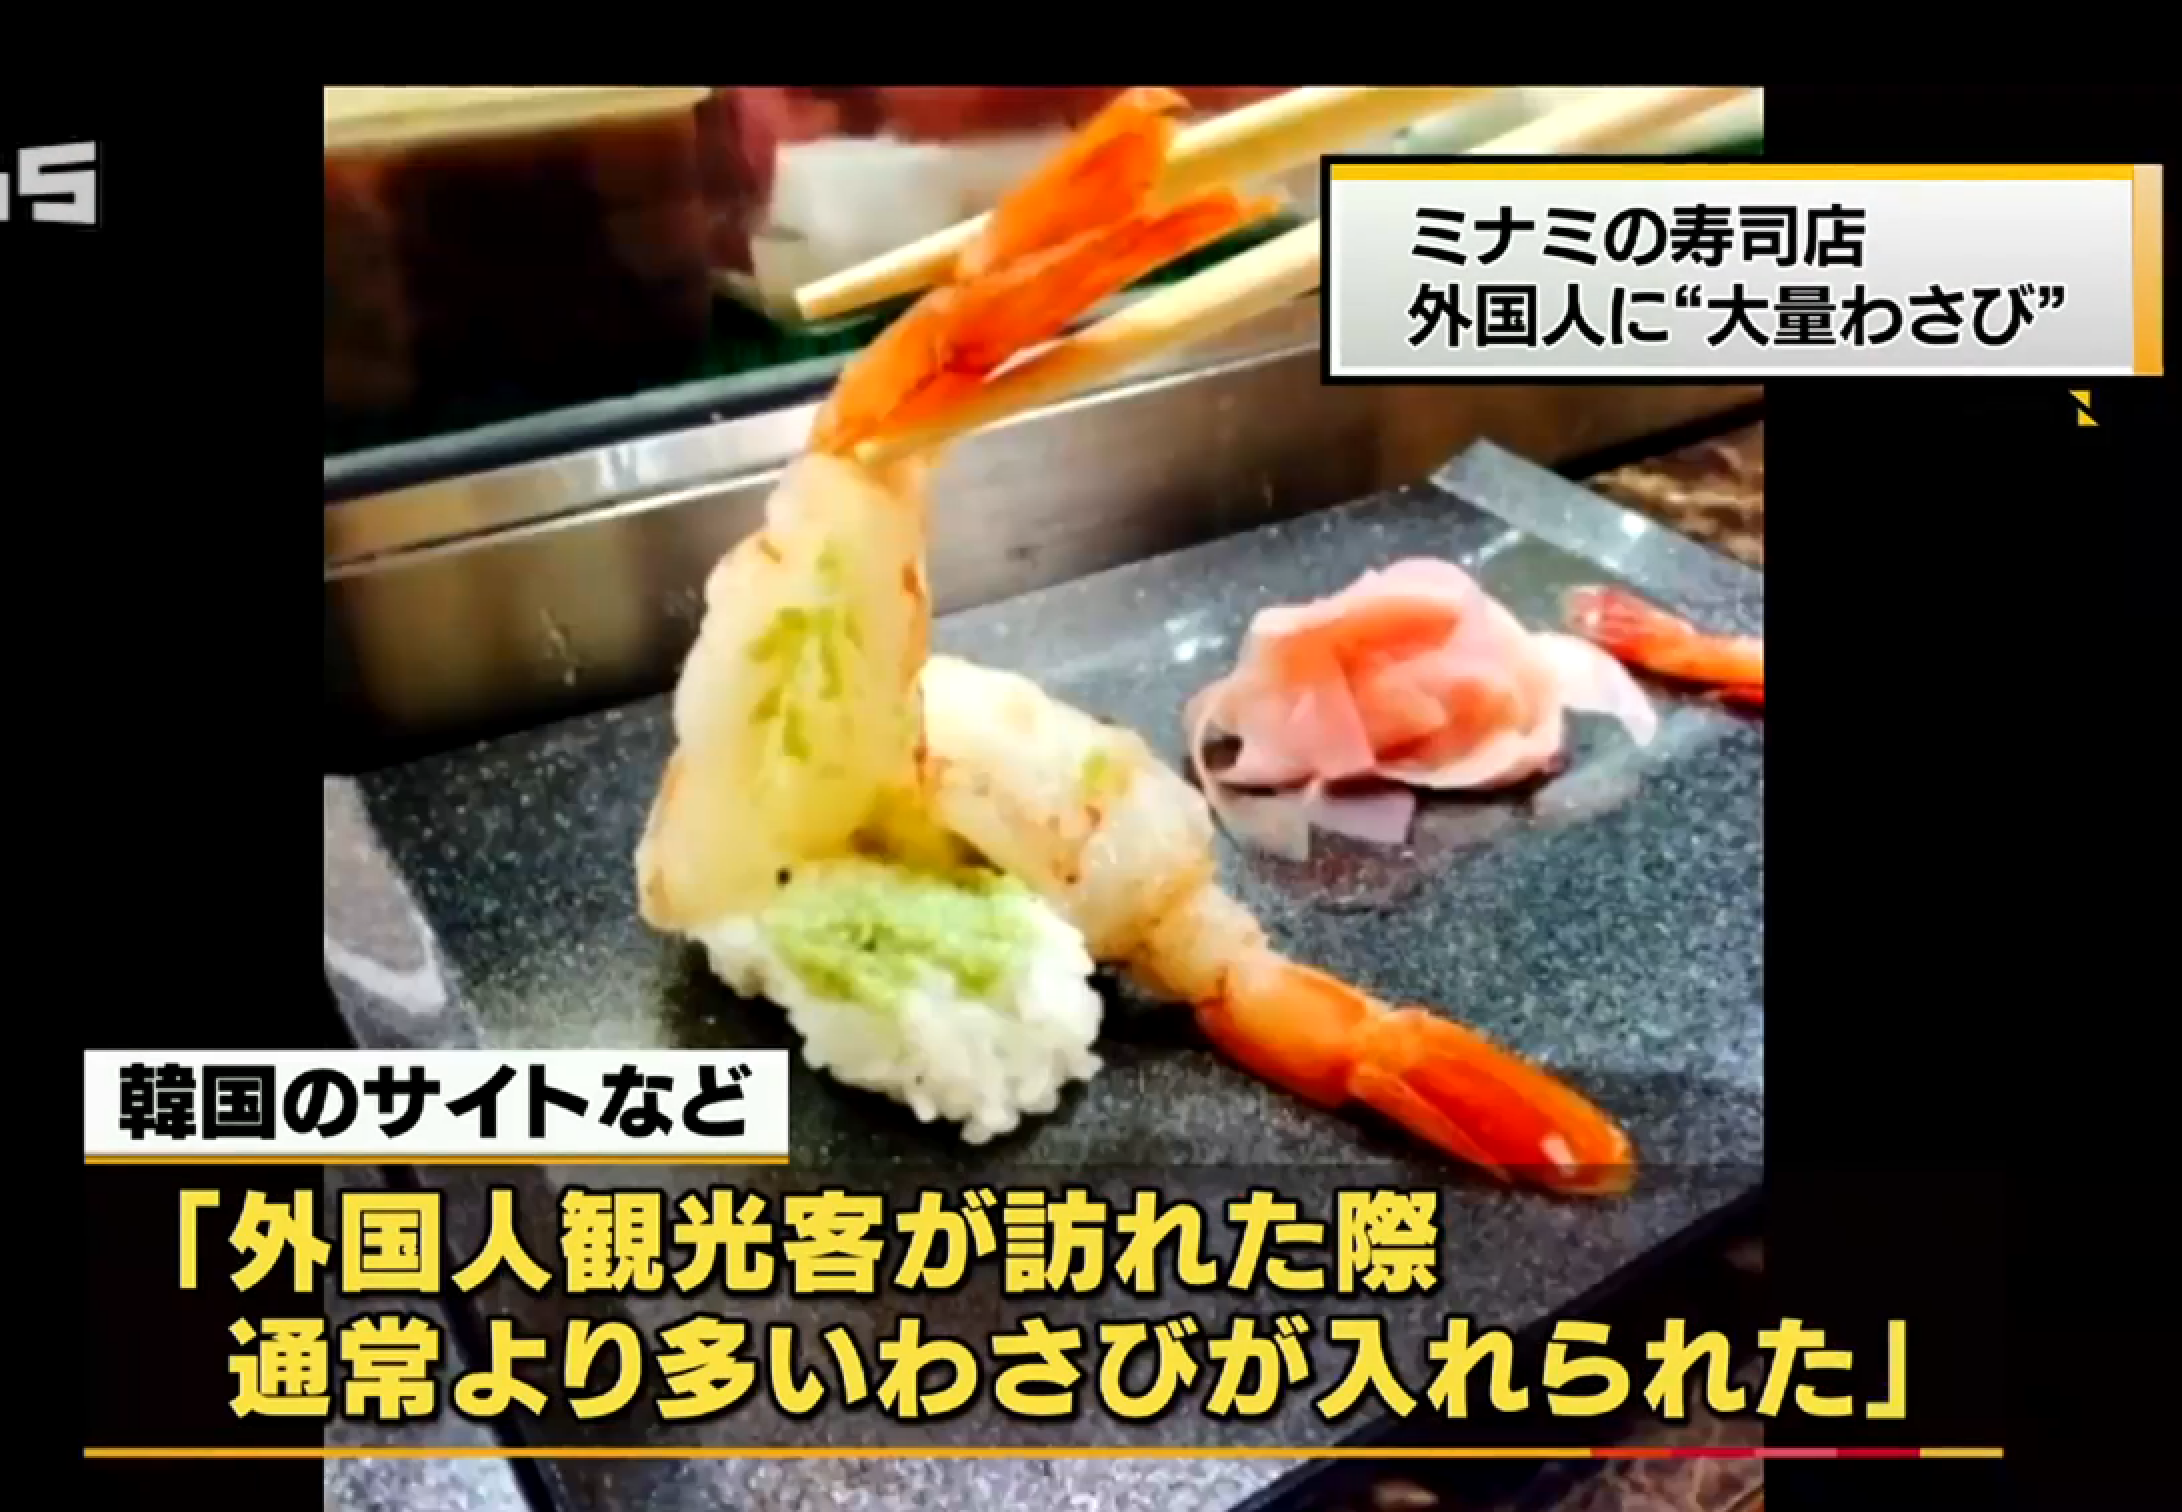 遊客喊住食辣辣壽司 大阪壽司店涉歧視外國食客